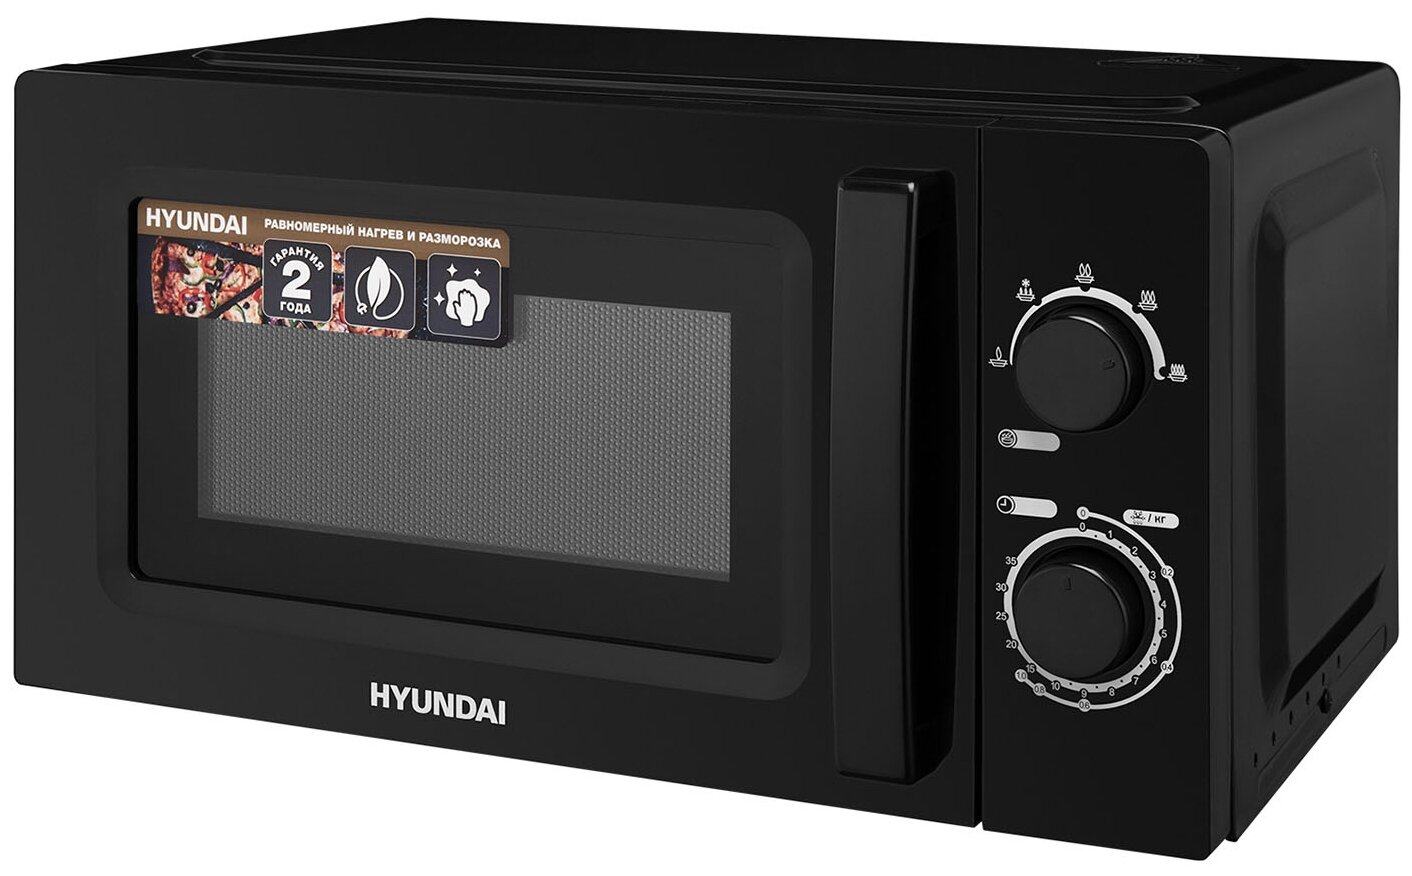 Микроволновая печь Hyundai HYM-M2008 черный - фото №2